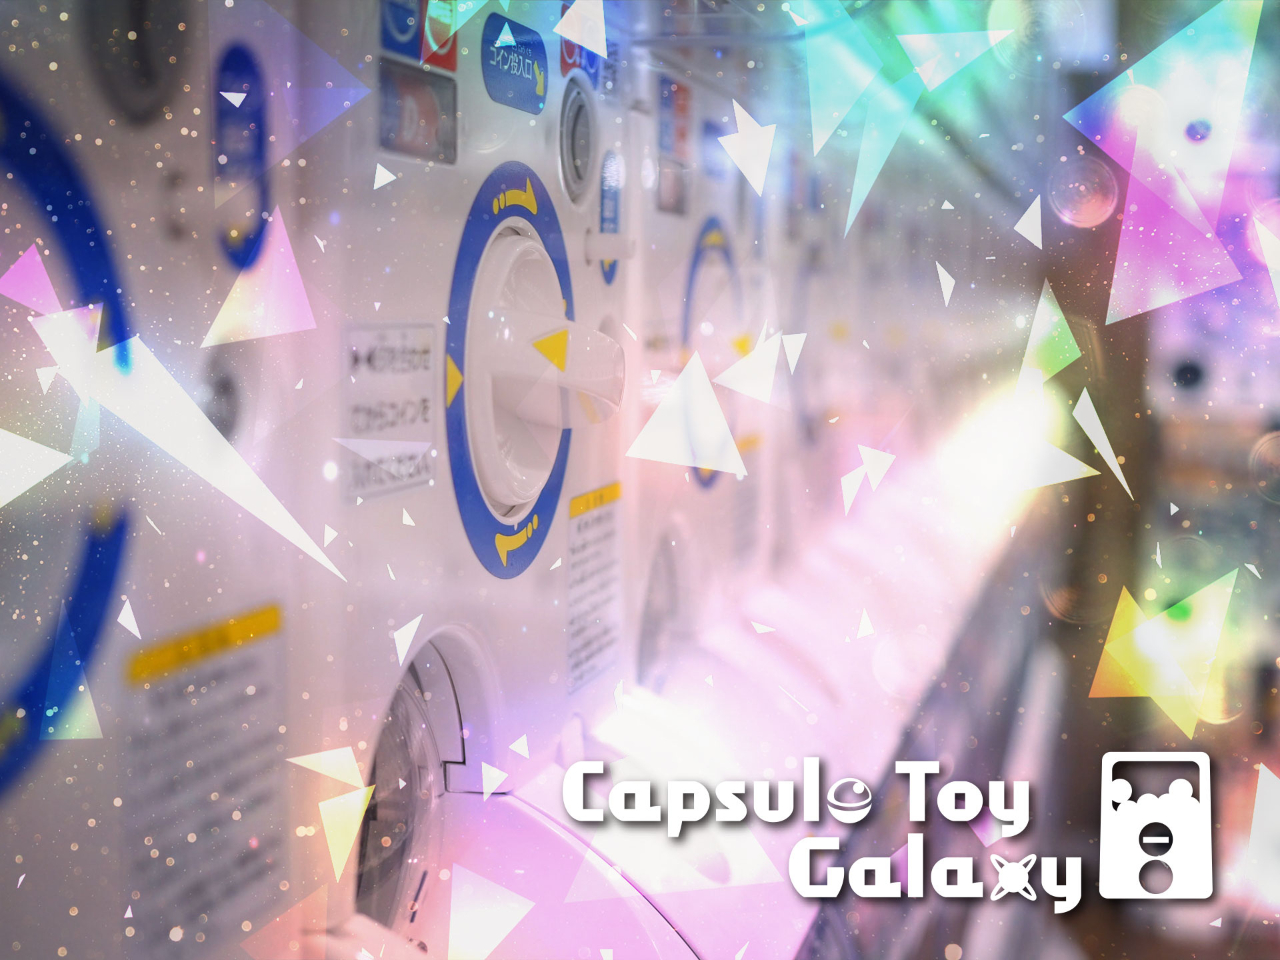 長野県阿智村「天空の楽園ナイトツアー」に「Capsule Toy Galaxy」オープン